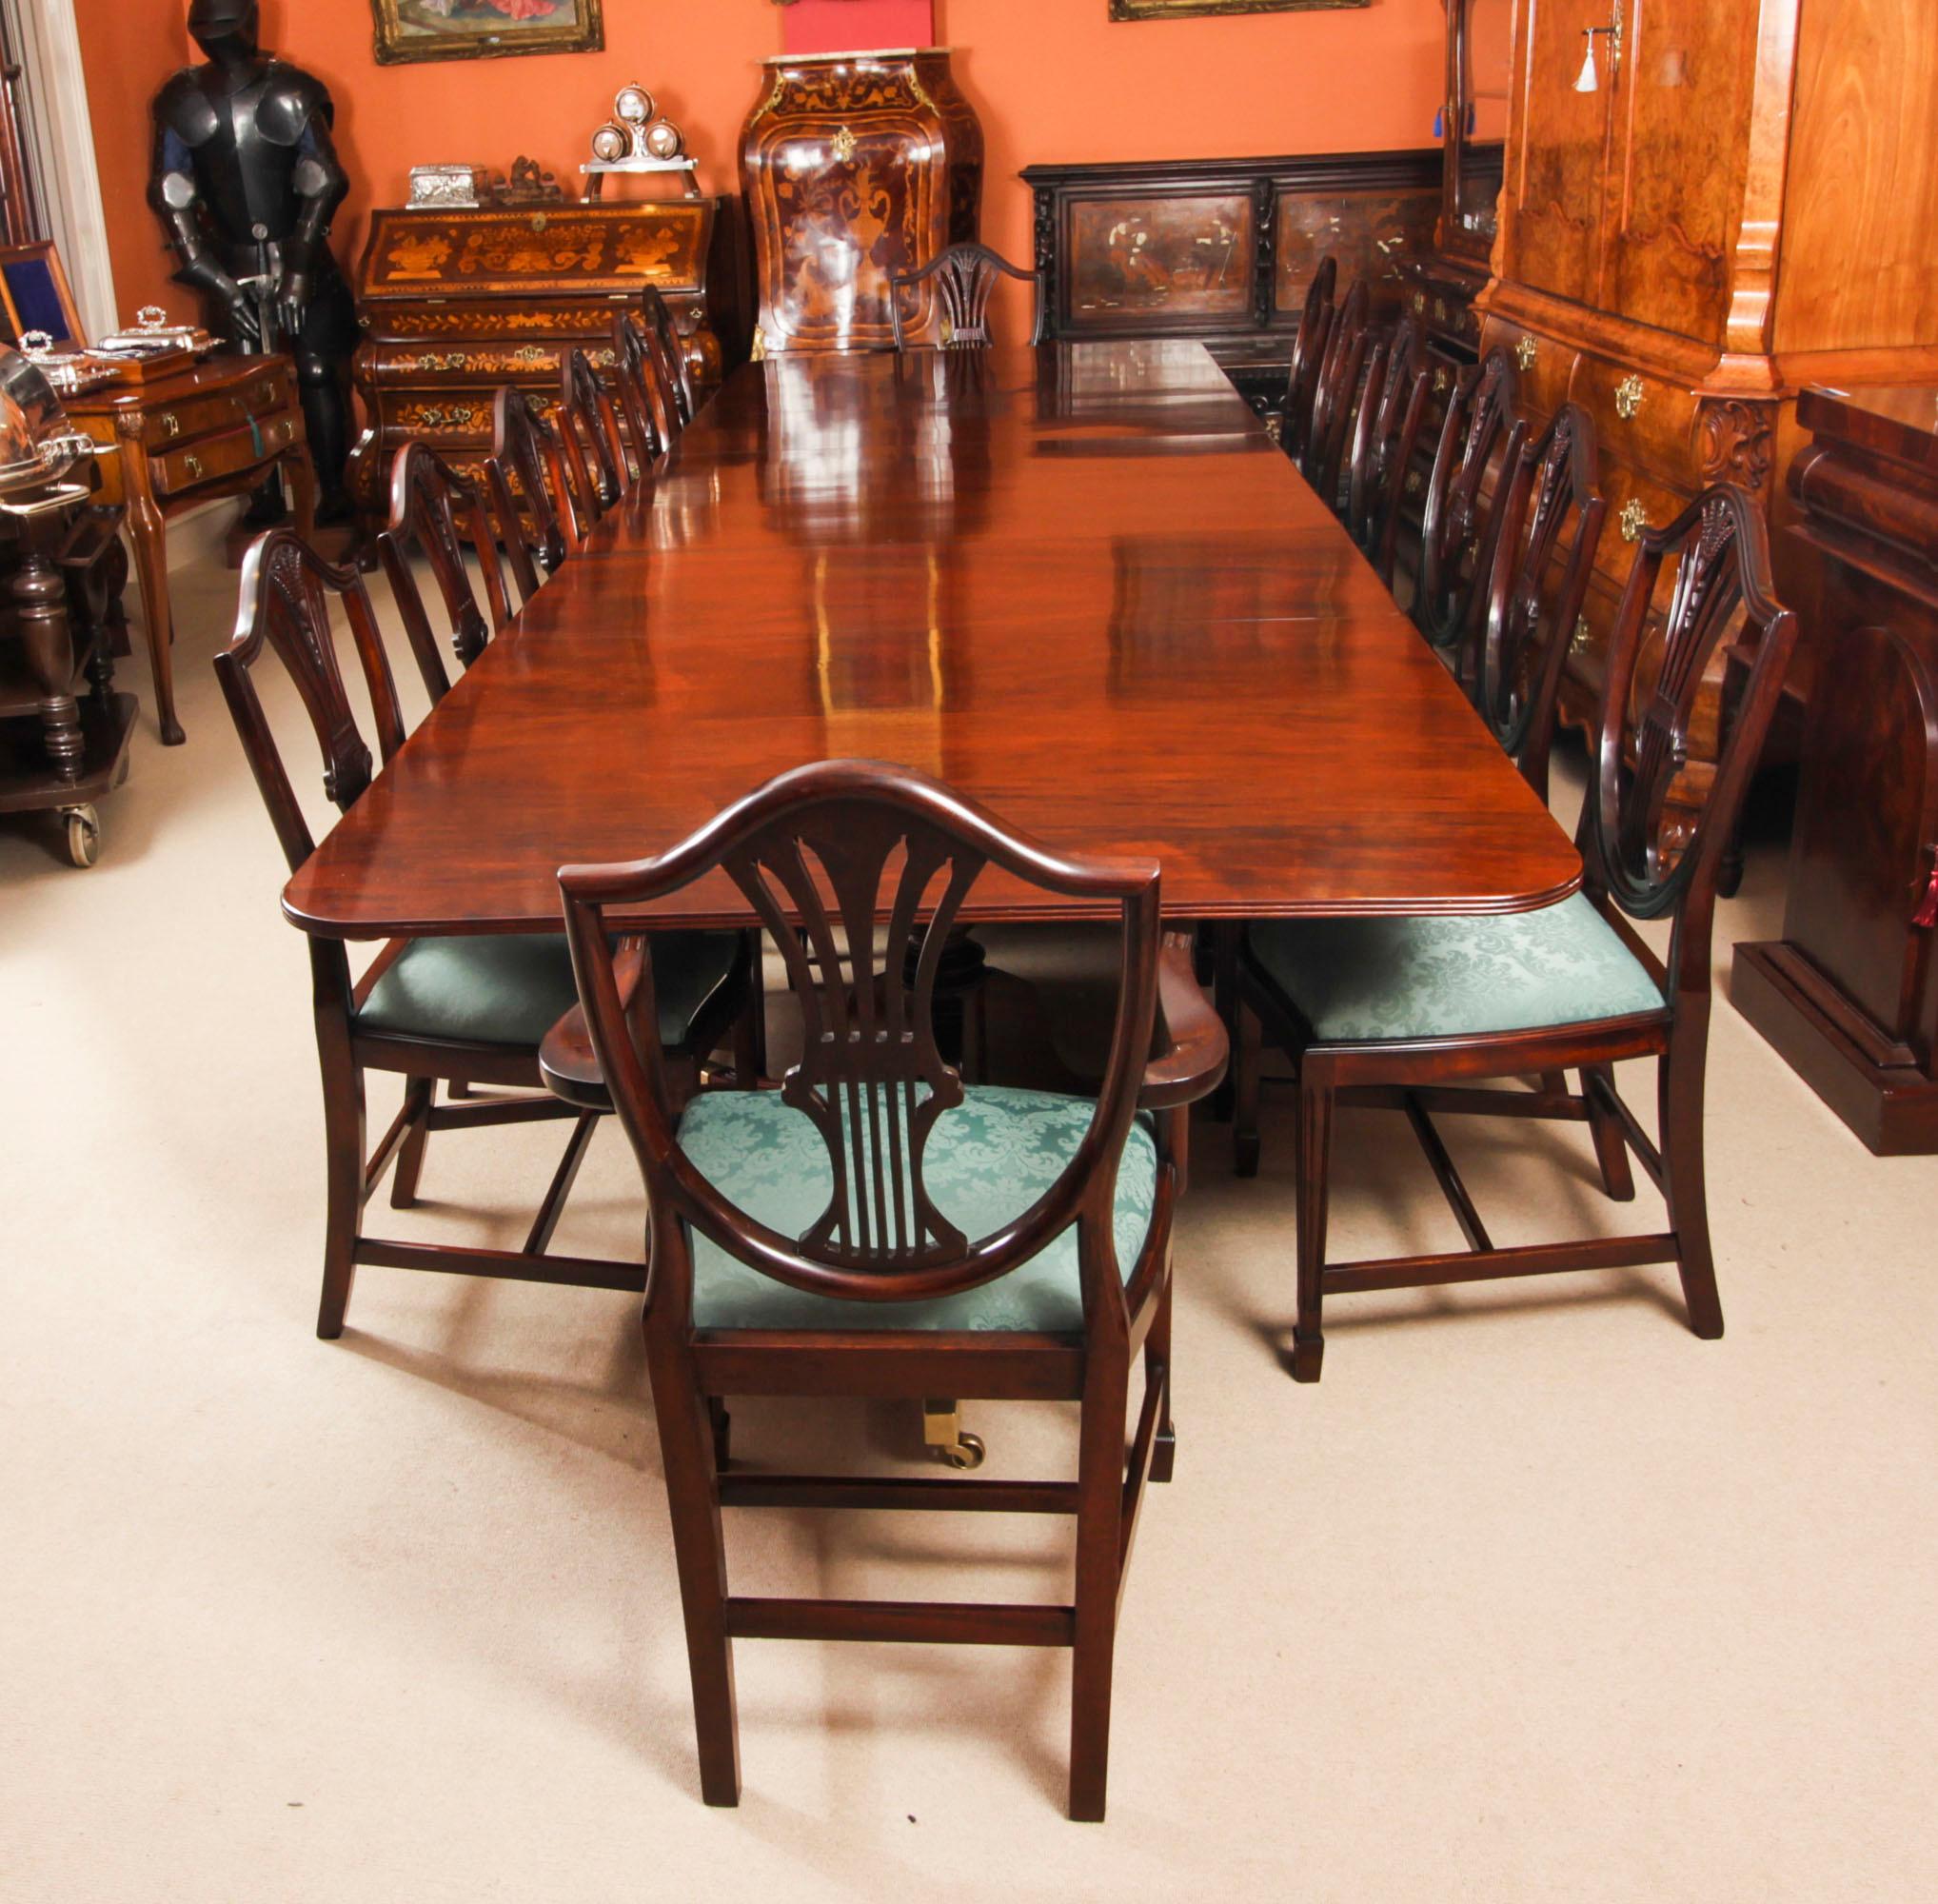 Dies ist ein eleganter antiker Esstisch im Regency-Revival-Stil, aus dem 19.  wheatsheaf shieldback dining chairs.

Der Tisch hat zwei Platten, die je nach Bedarf hinzugefügt oder entfernt werden können. Er steht auf zwei dreifachen